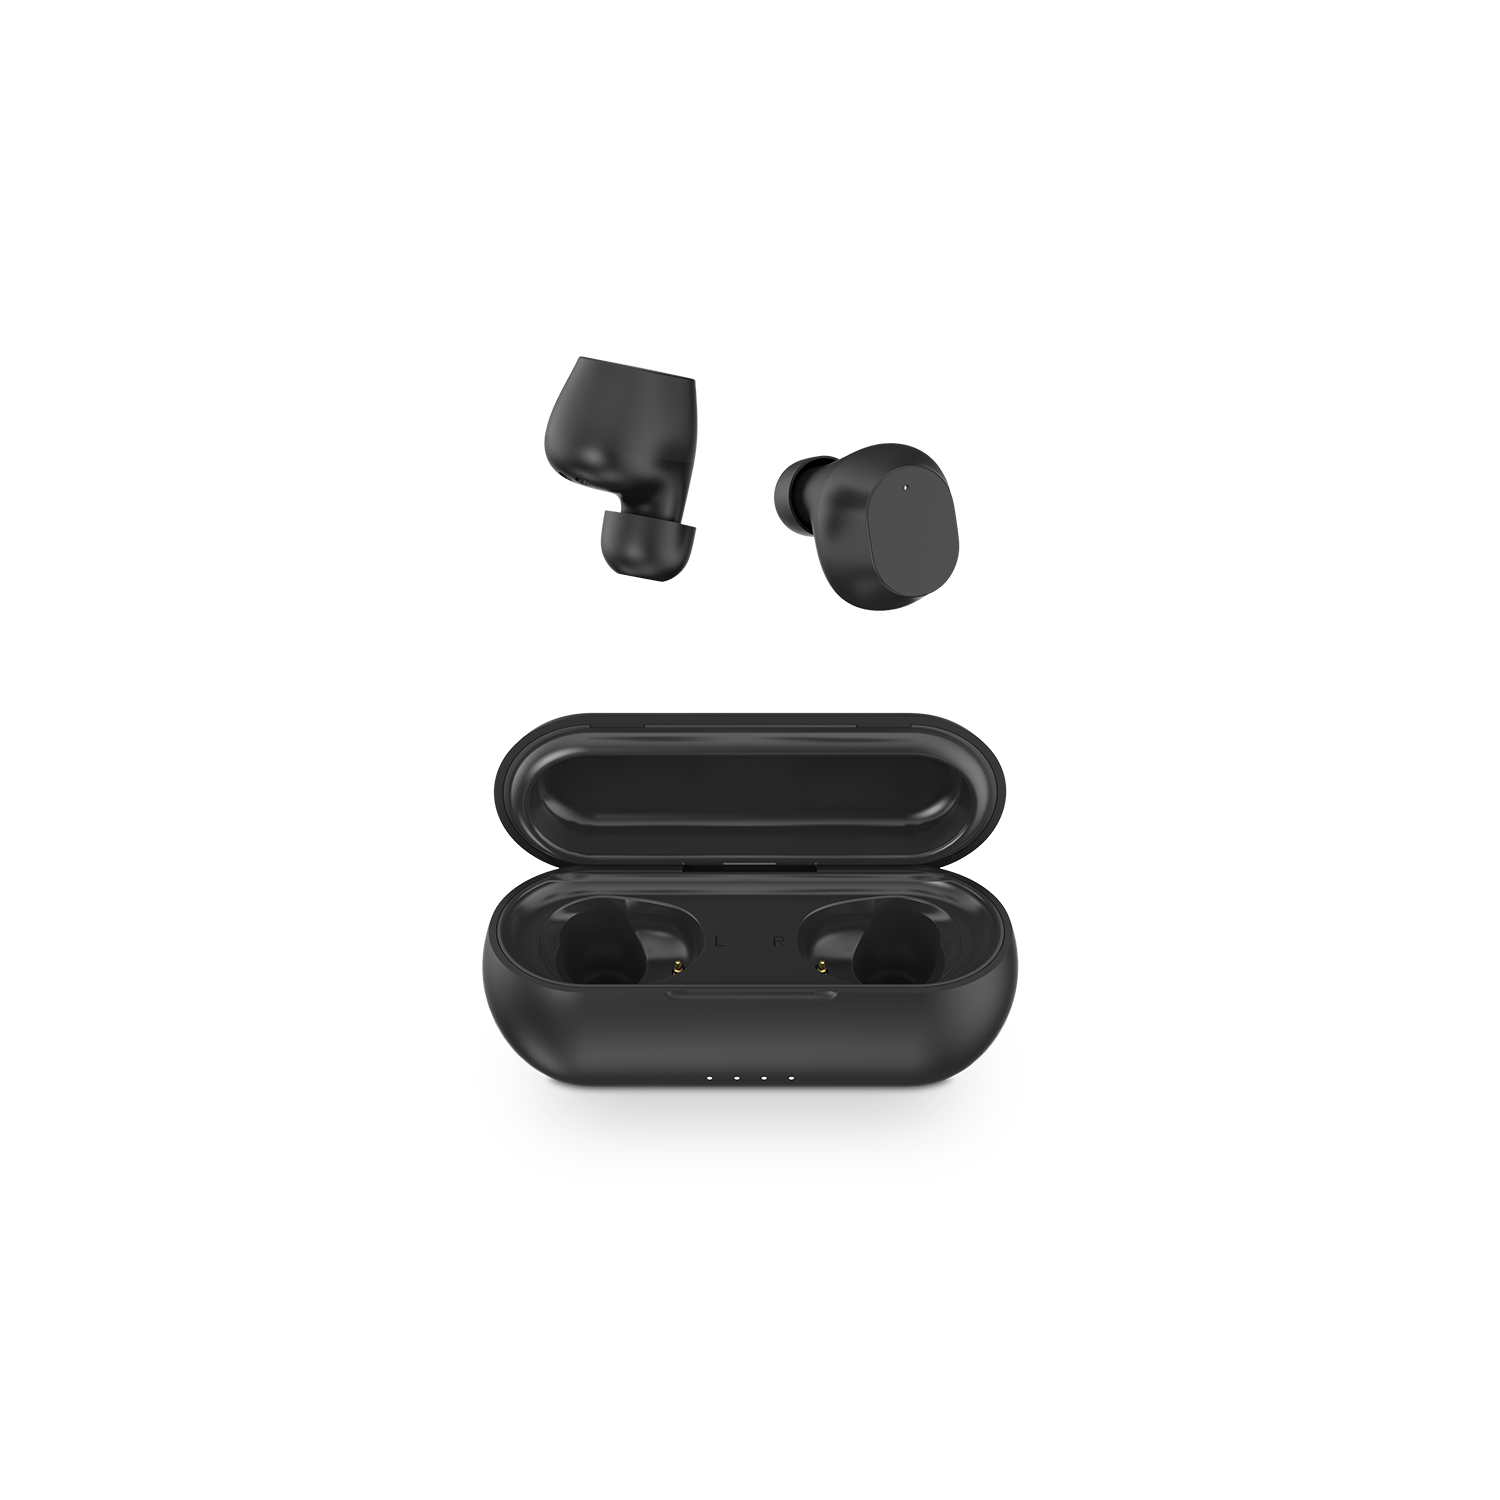 Zion Pure Black, son los nuevos auriculares inalámbricos de SPC